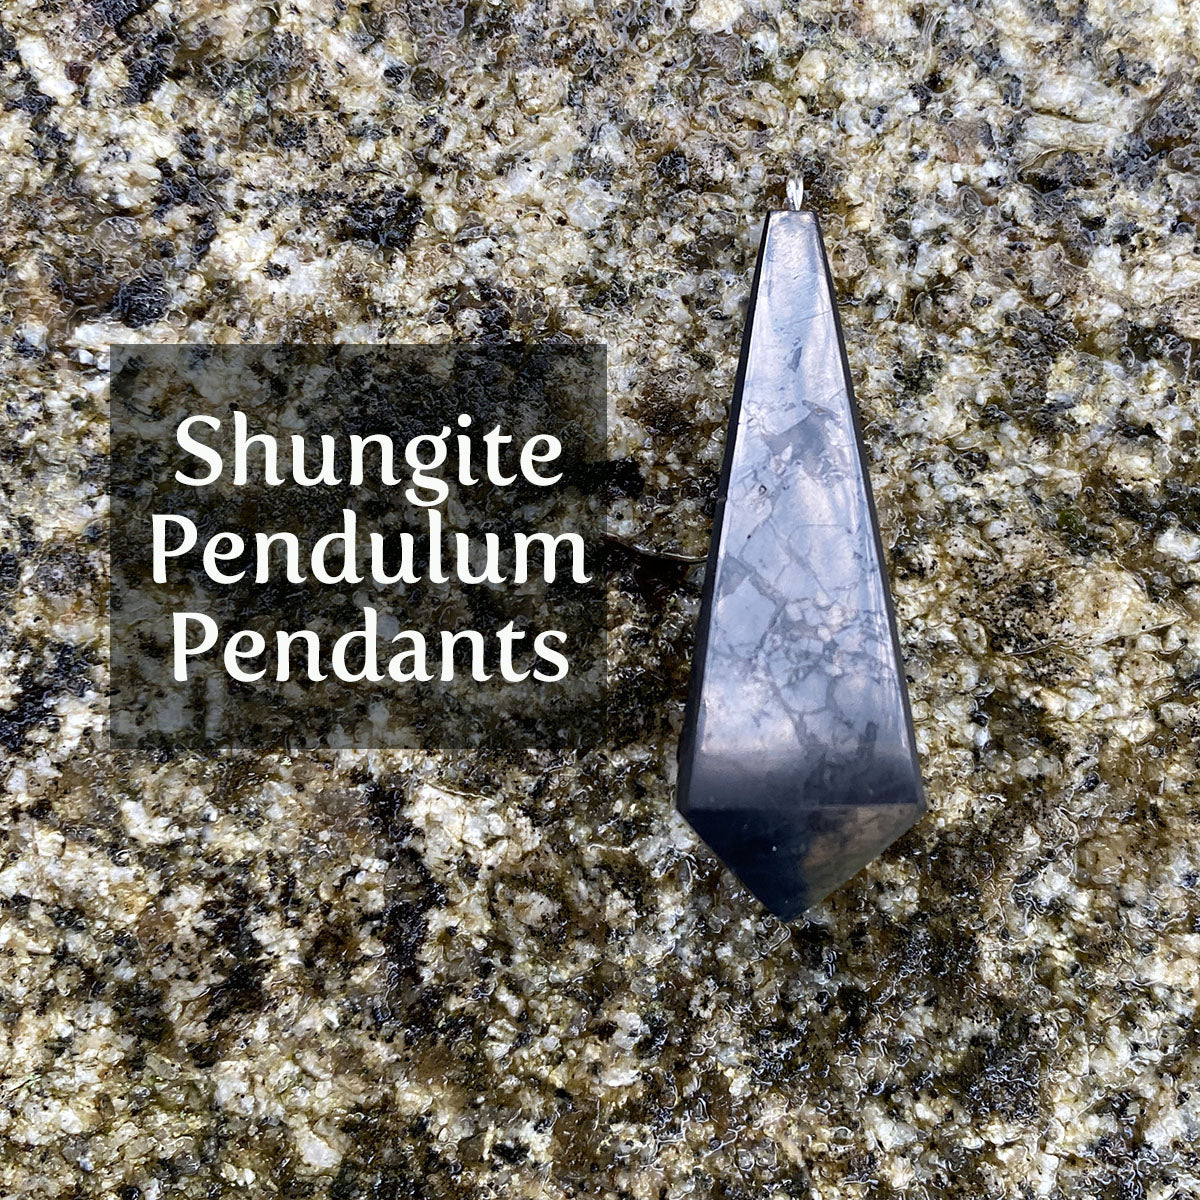 Shungite Pendulum Pendant